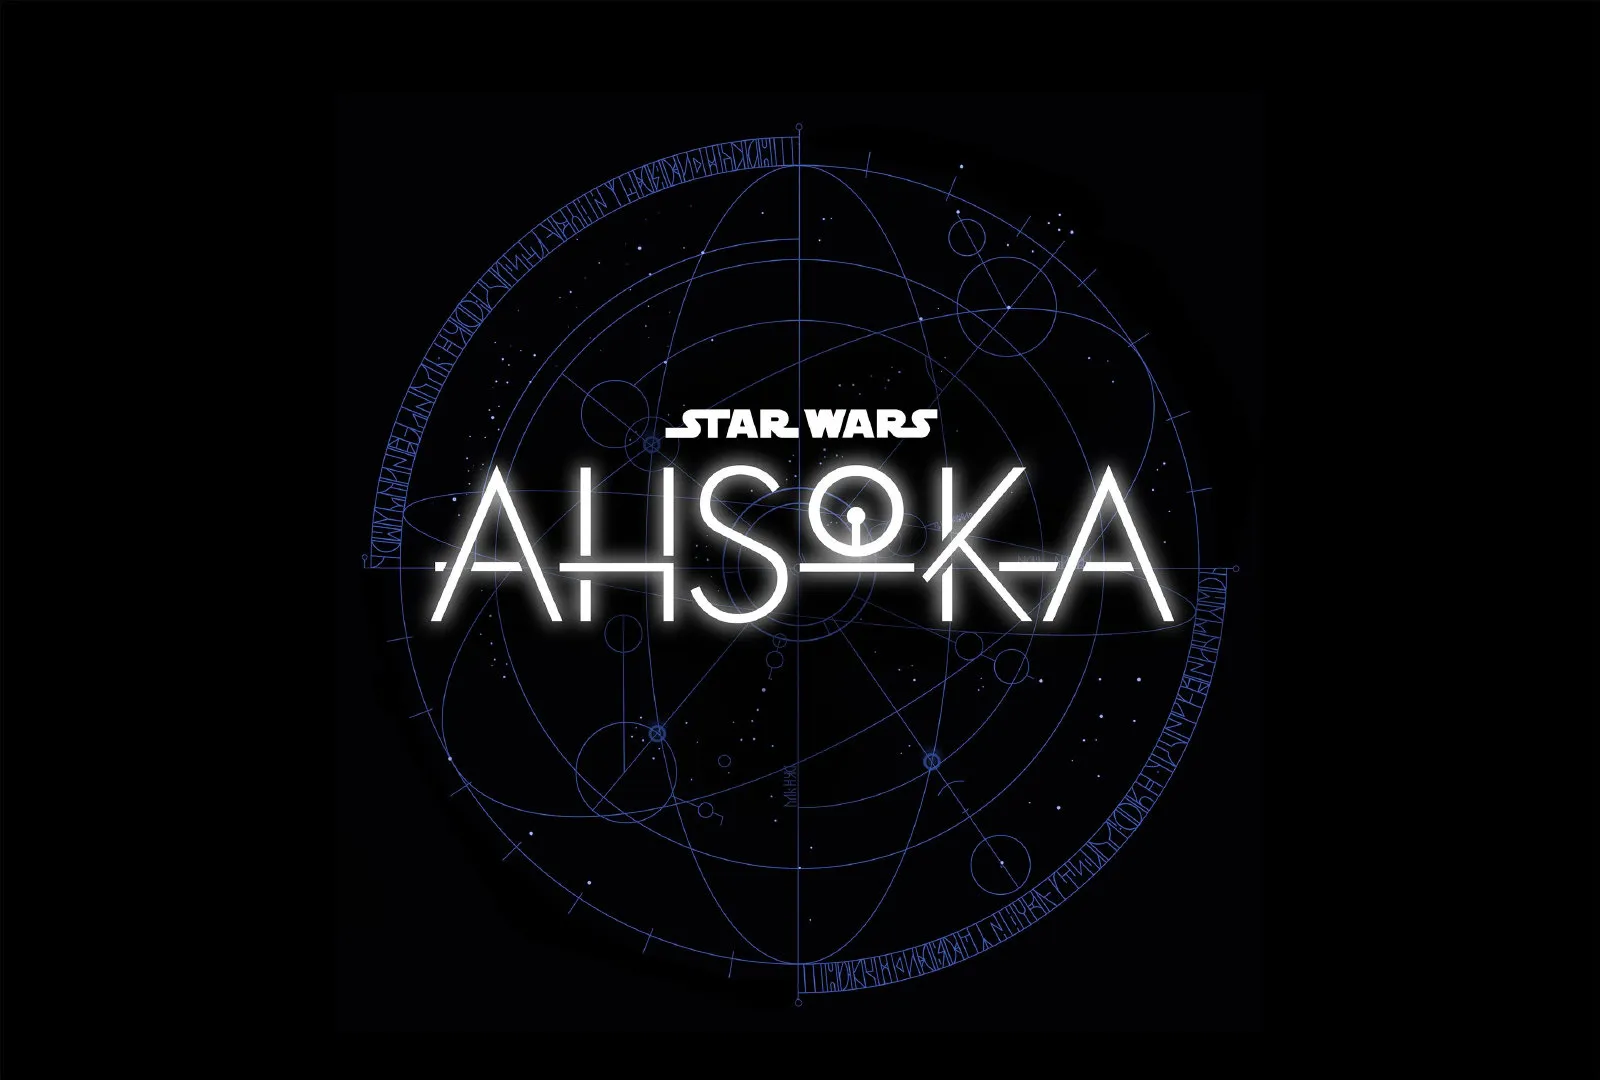 Star Wars new drama 'Ahsoka Tano‎' revealed logo at D23Expo | FMV6